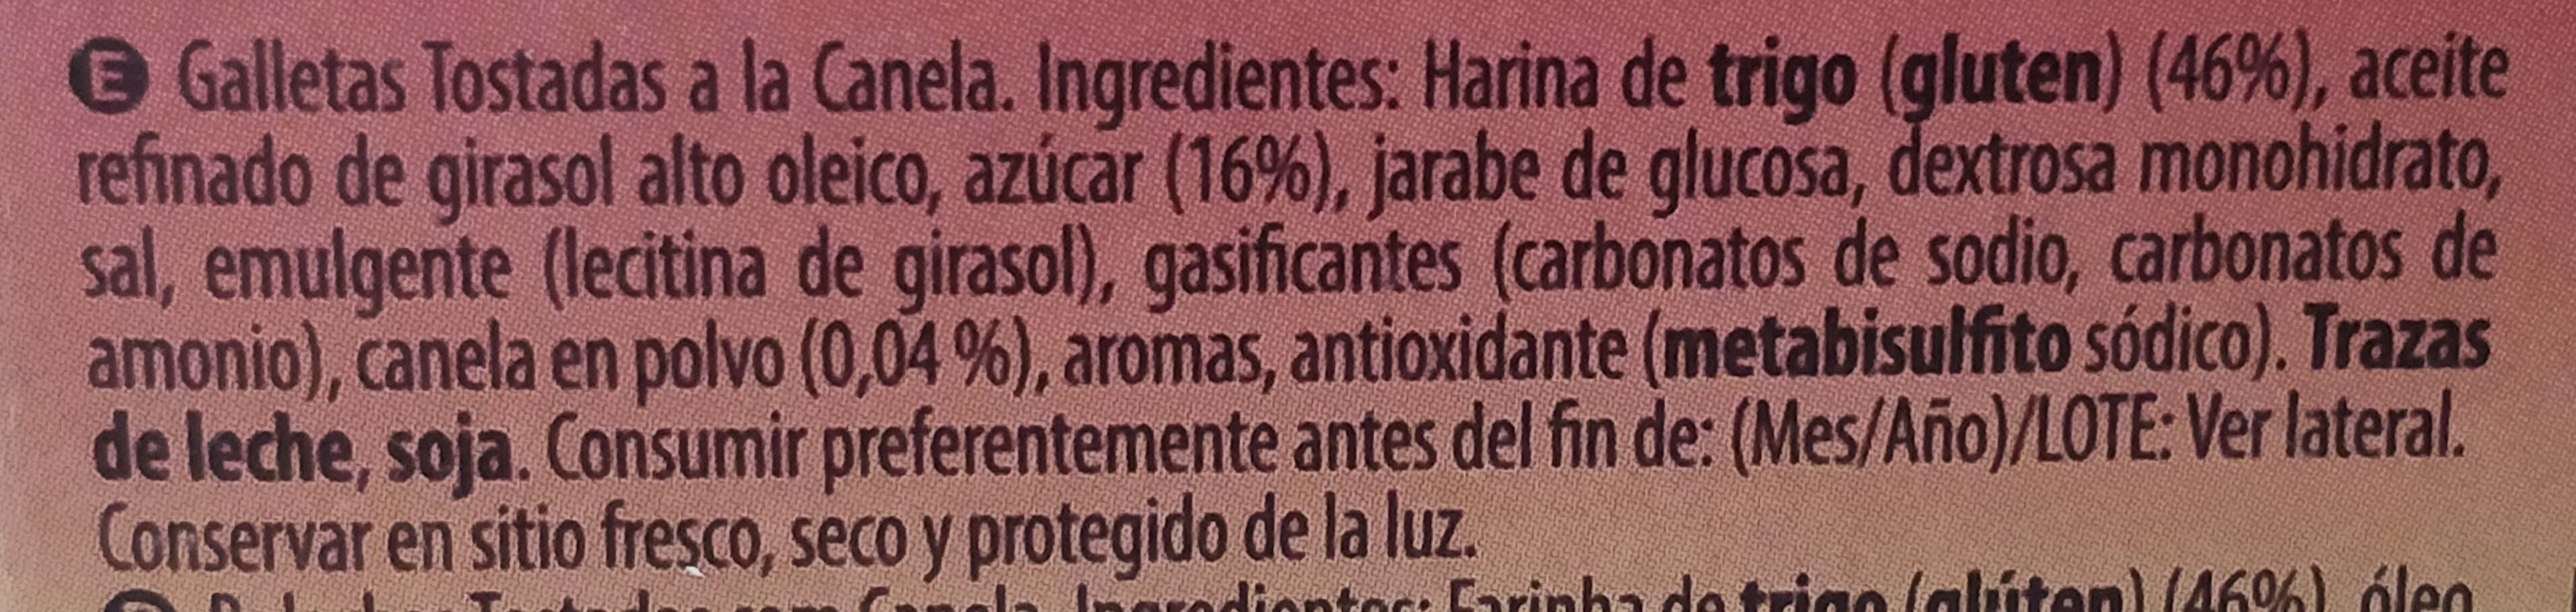 Galletas canela - Ingredients - es